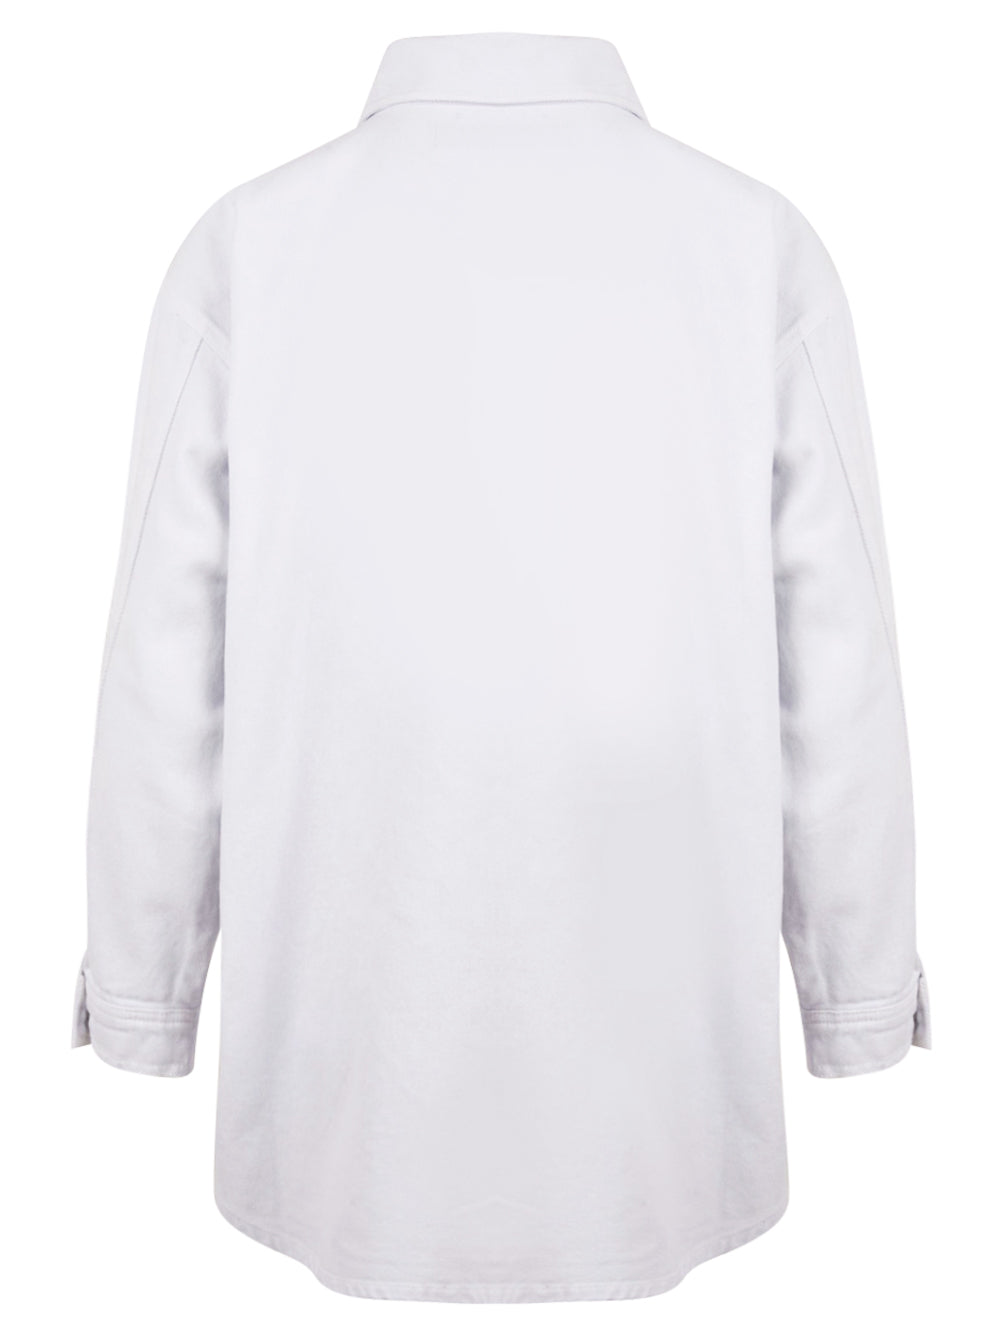 Camicia HINNOMINATE Donna HMABW00291 Bianco